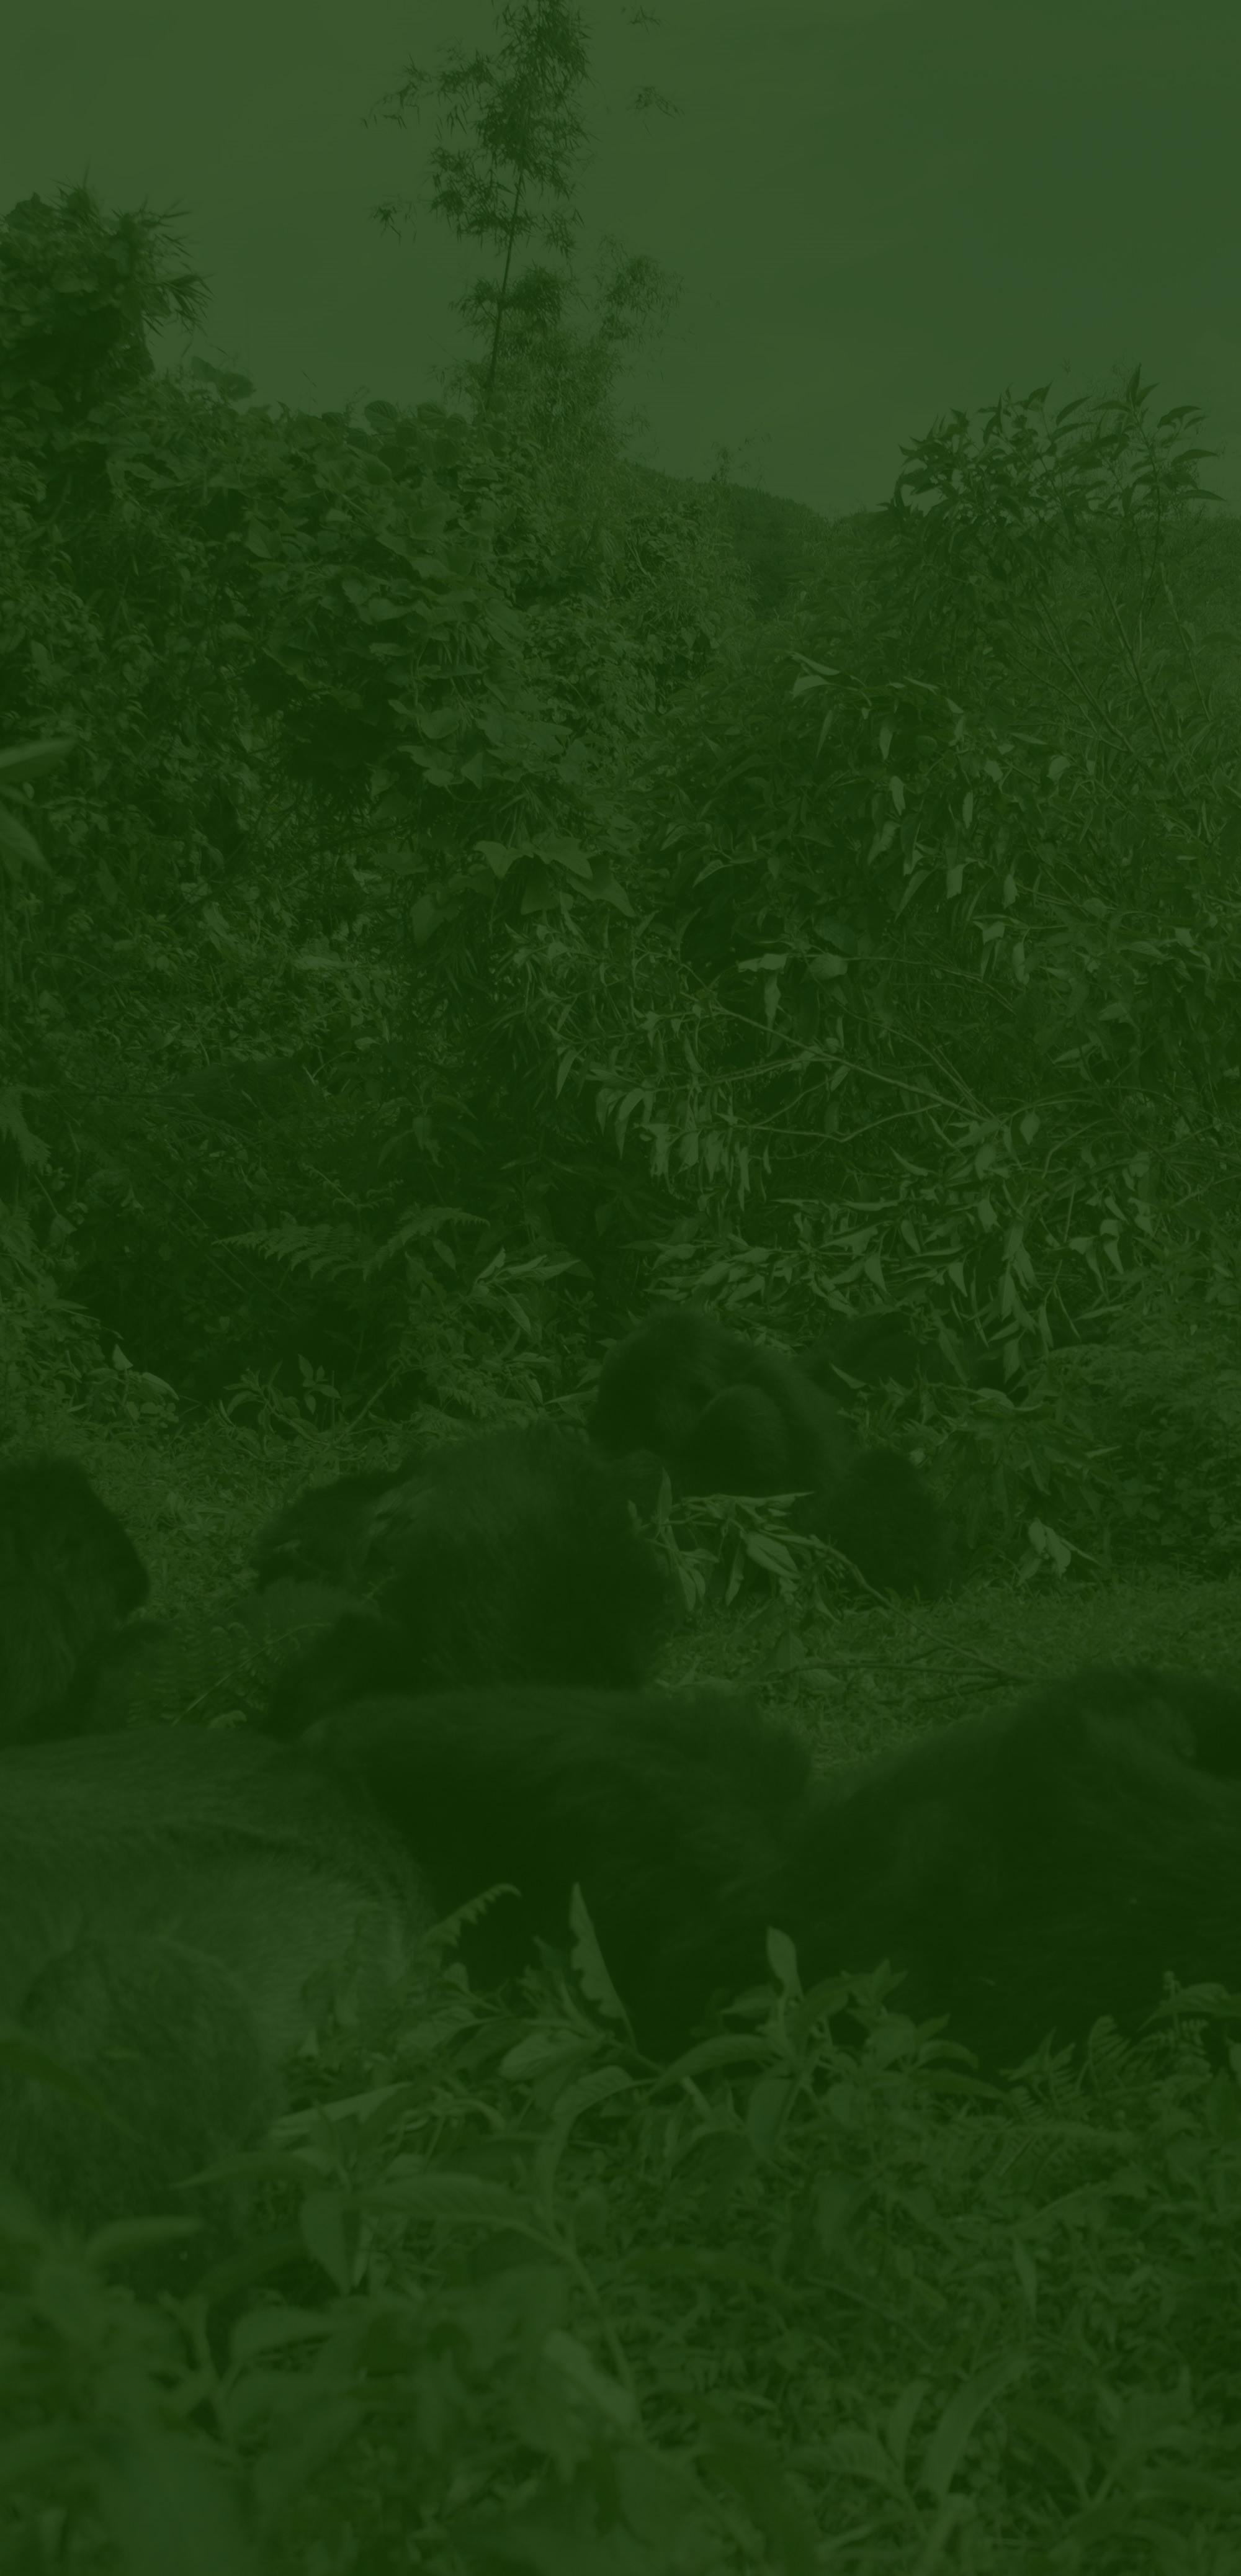 ルワンダ共和国の火山国立公園に生息するゴリラの保護に向けた活動を計画しています